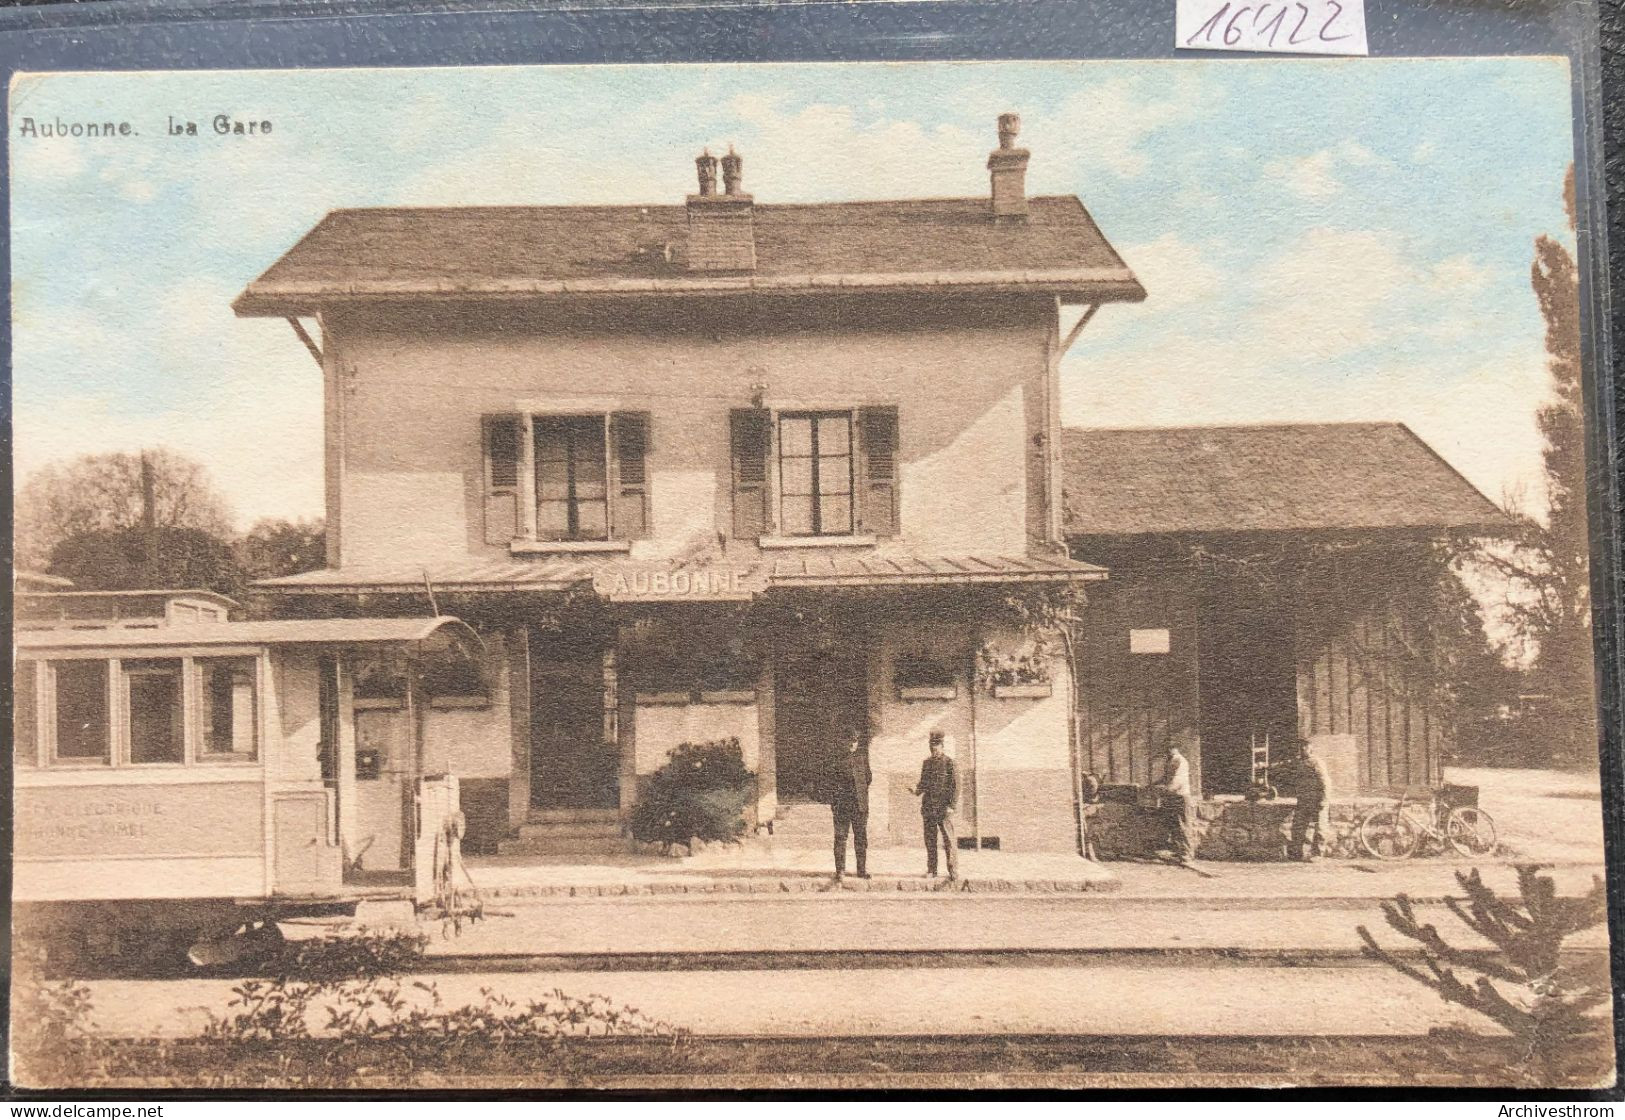 Aubonne - La Gare Avec Chefs, Employés Et L'avant Du Train Allaman-Aubonne-Gimel (16'122) - Aubonne